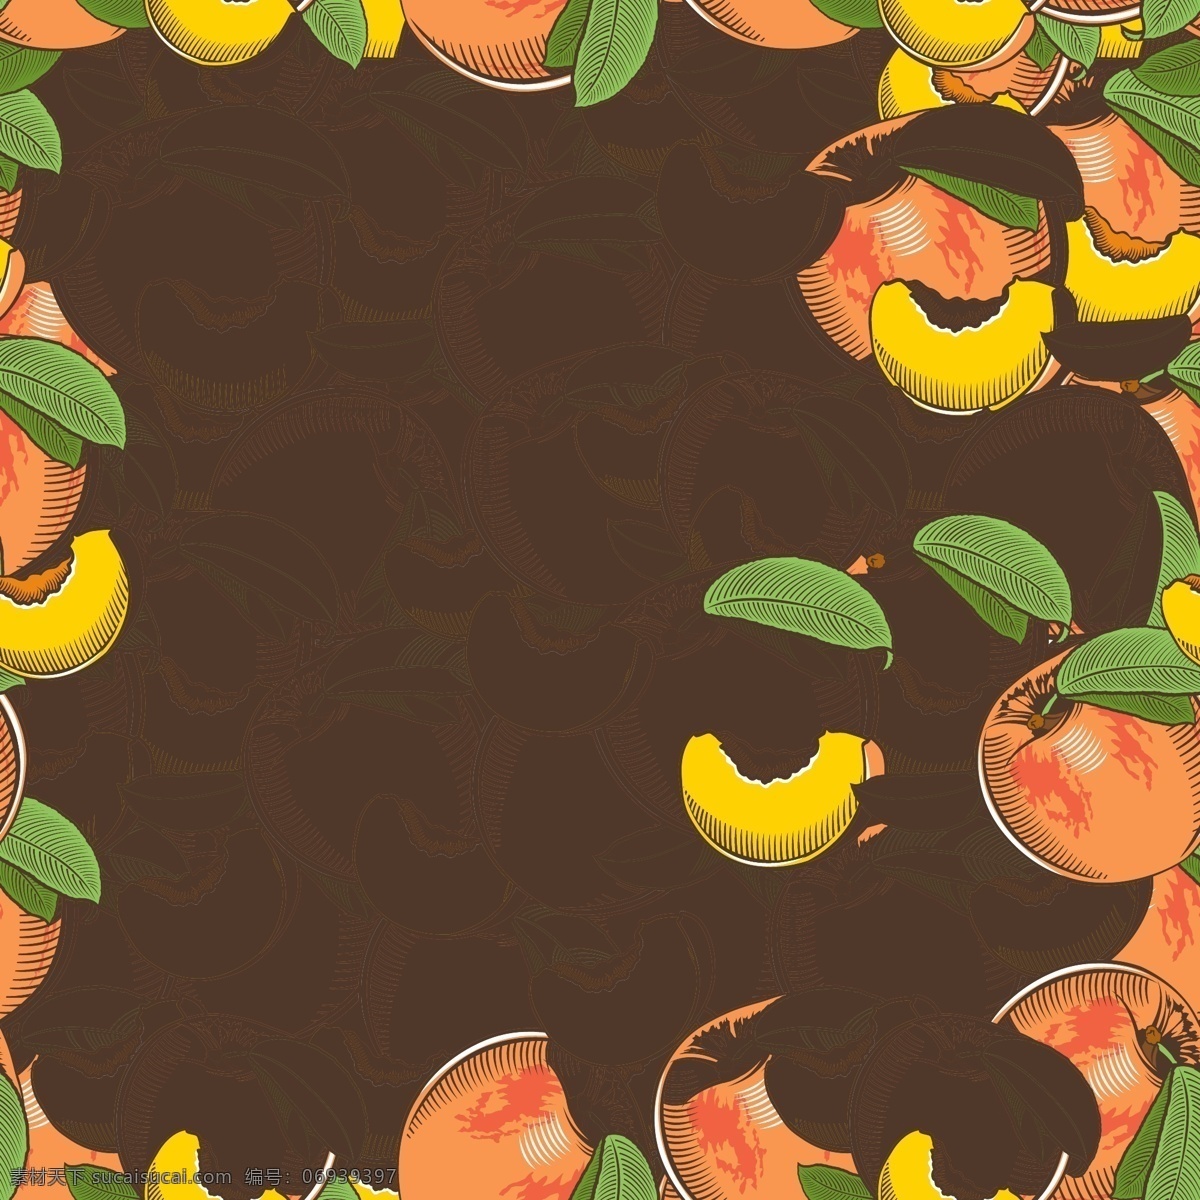 彩绘 桃子 无缝 背景图片 水果 无缝背景 矢量图 格式 矢量 高清图片